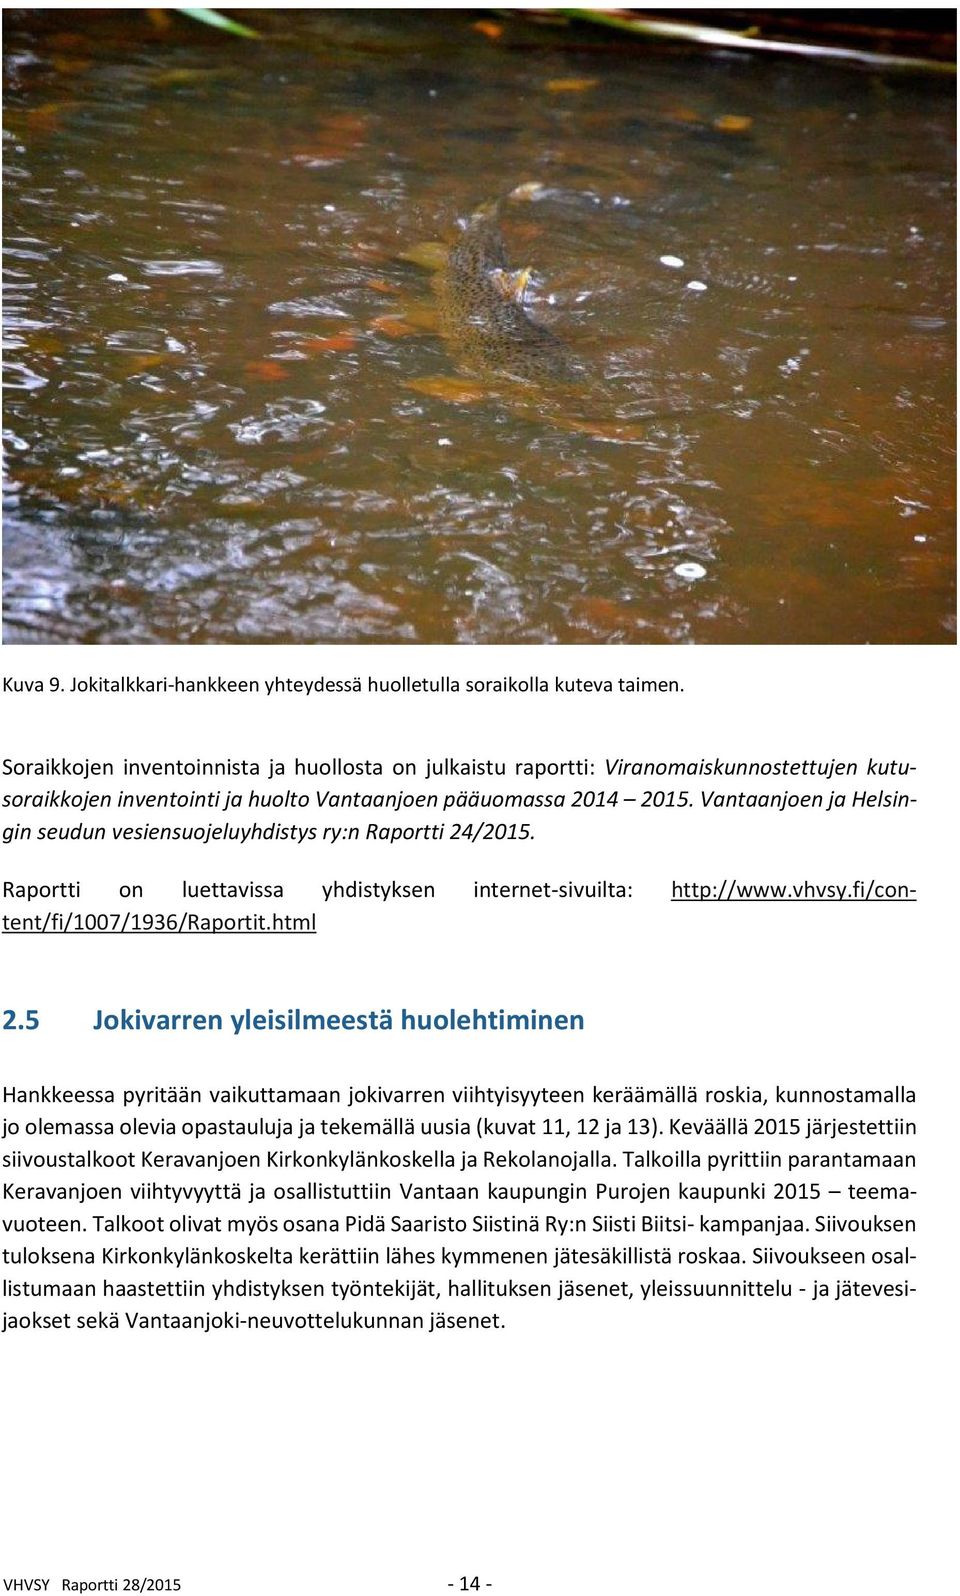 Vantaanjoen ja Helsingin seudun vesiensuojeluyhdistys ry:n Raportti 24/2015. Raportti on luettavissa yhdistyksen internet-sivuilta: http://www.vhvsy.fi/content/fi/1007/1936/raportit.html 2.